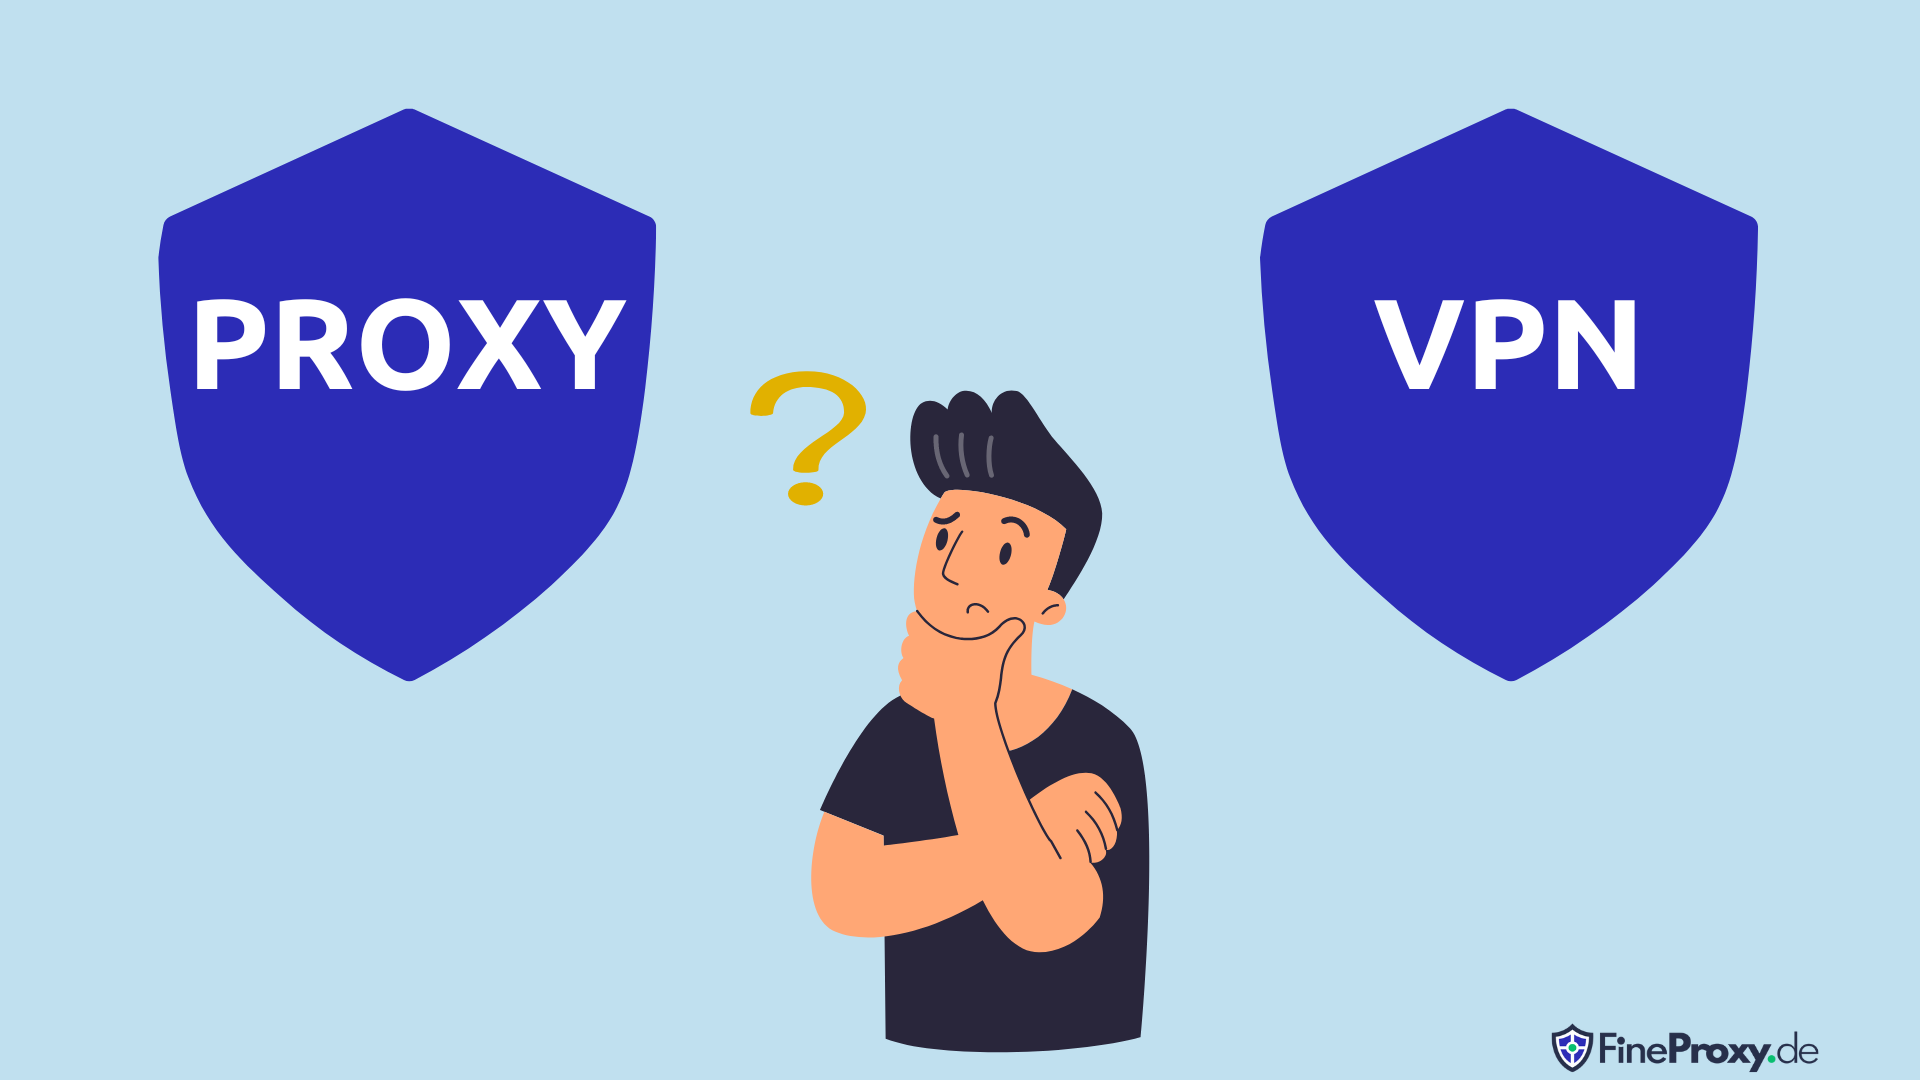 Proxy vs VPN: หลักการทำงาน, 3 ความคล้ายคลึง, 7 ความแตกต่าง และคำตัดสินขั้นสุดท้าย [ฉบับปี 2023]